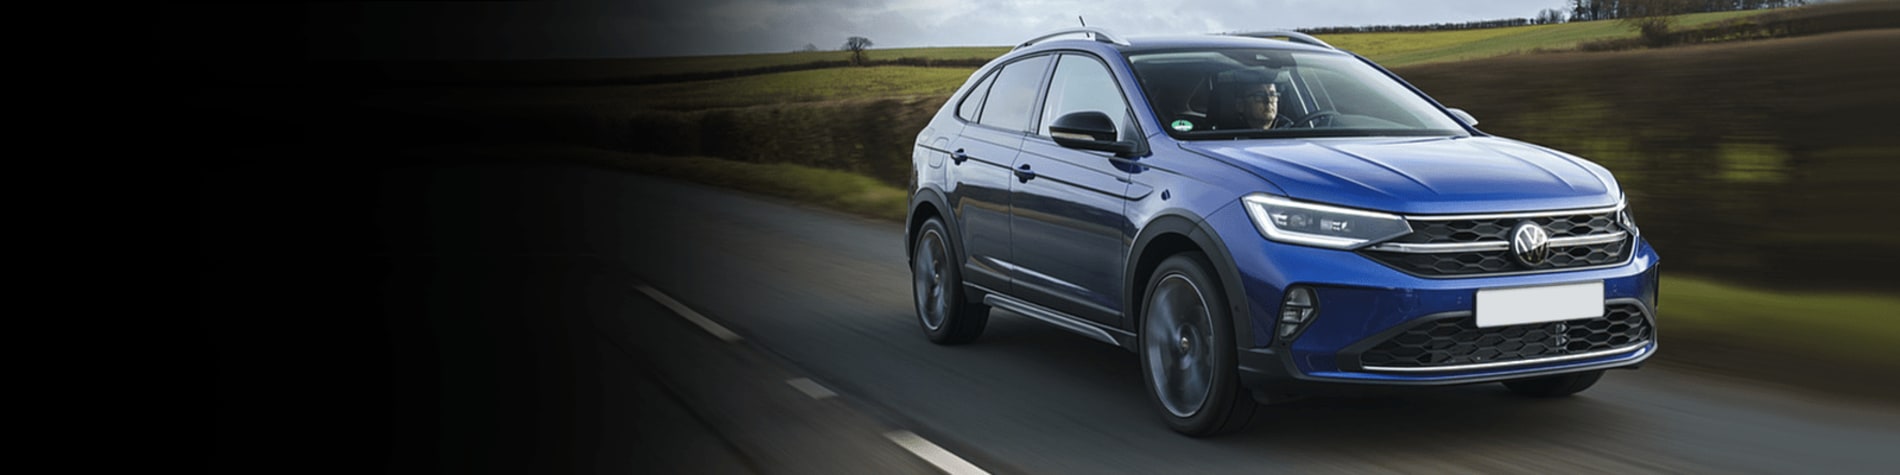 VW Taigo SUV Lease Deals - Car leasing